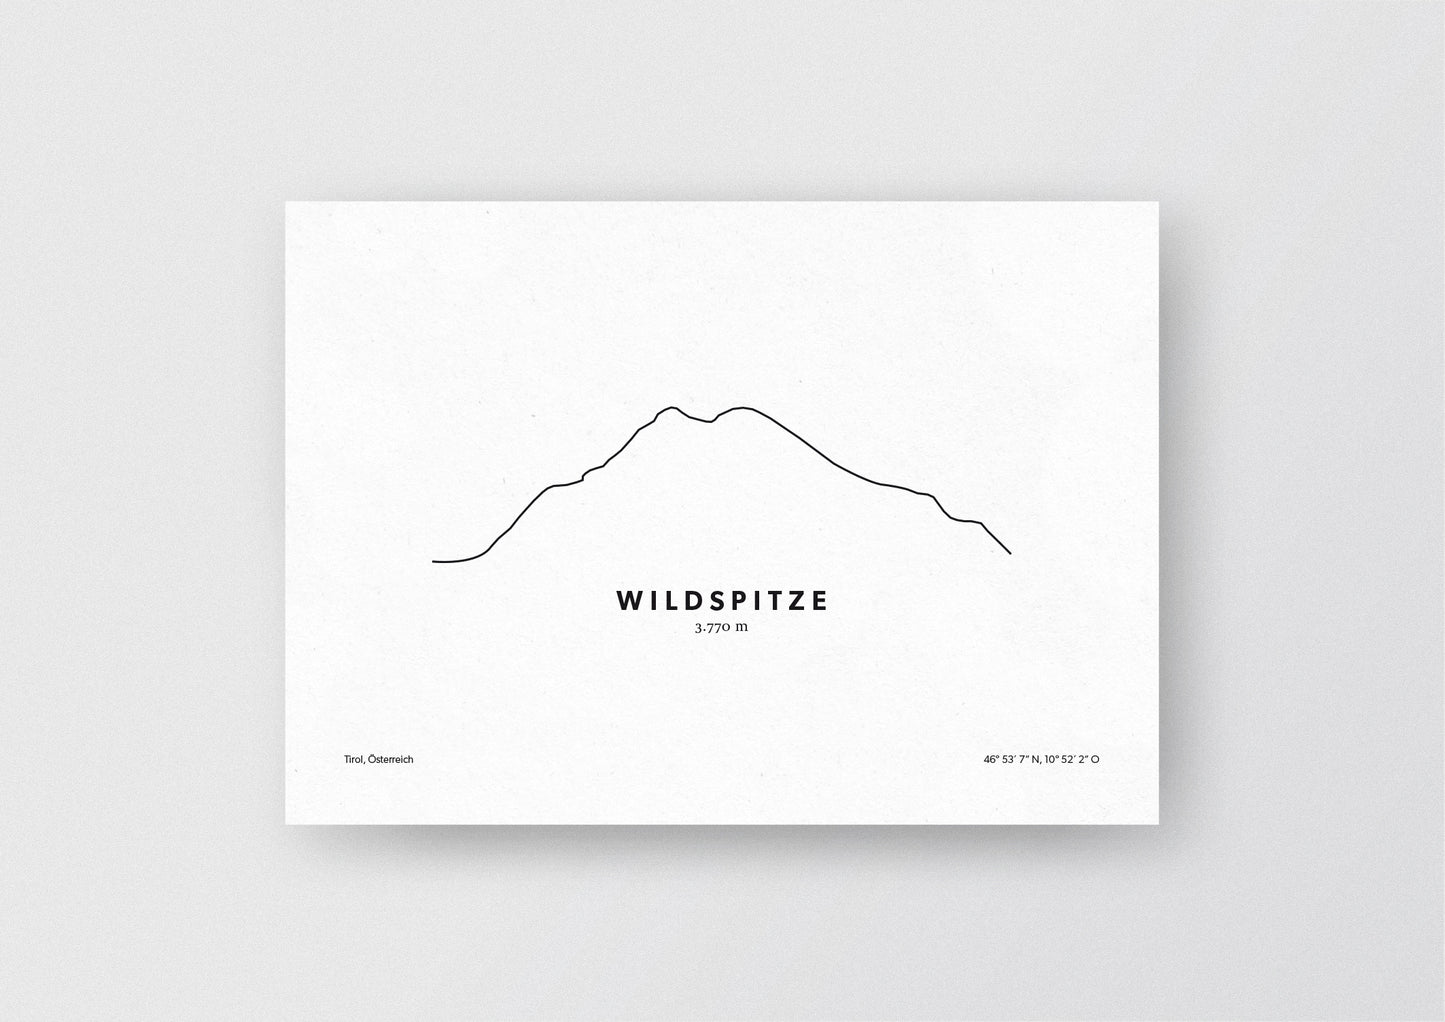 Minimalistische Illustration der Wildspitze in den Ötztaler Alpen, als stilvoller Einrichtungsgegenstand für Zuhause.